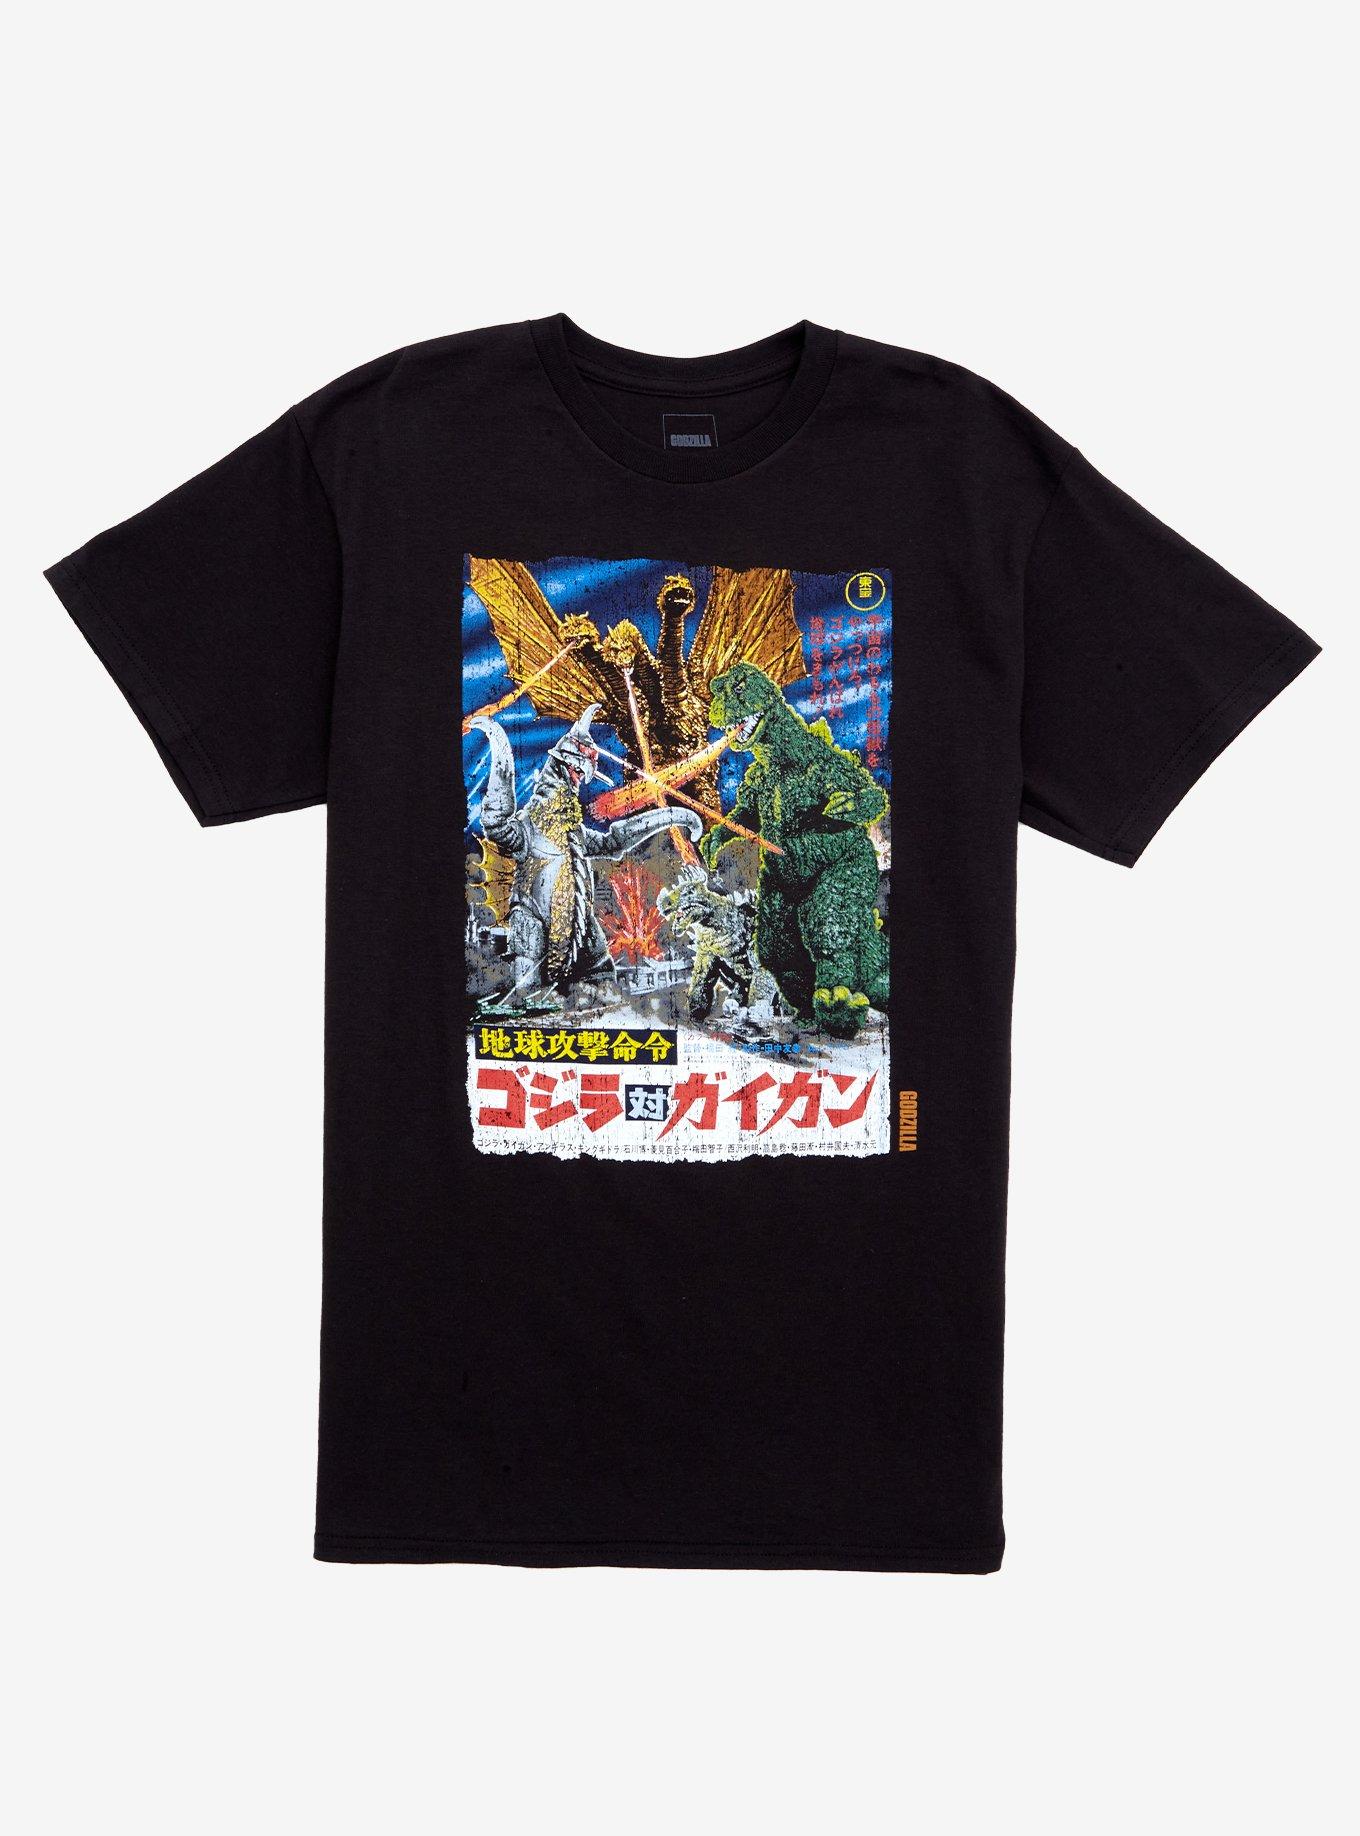 Godzilla Vs. Gigan Poster T-Shirt | Hot Topic